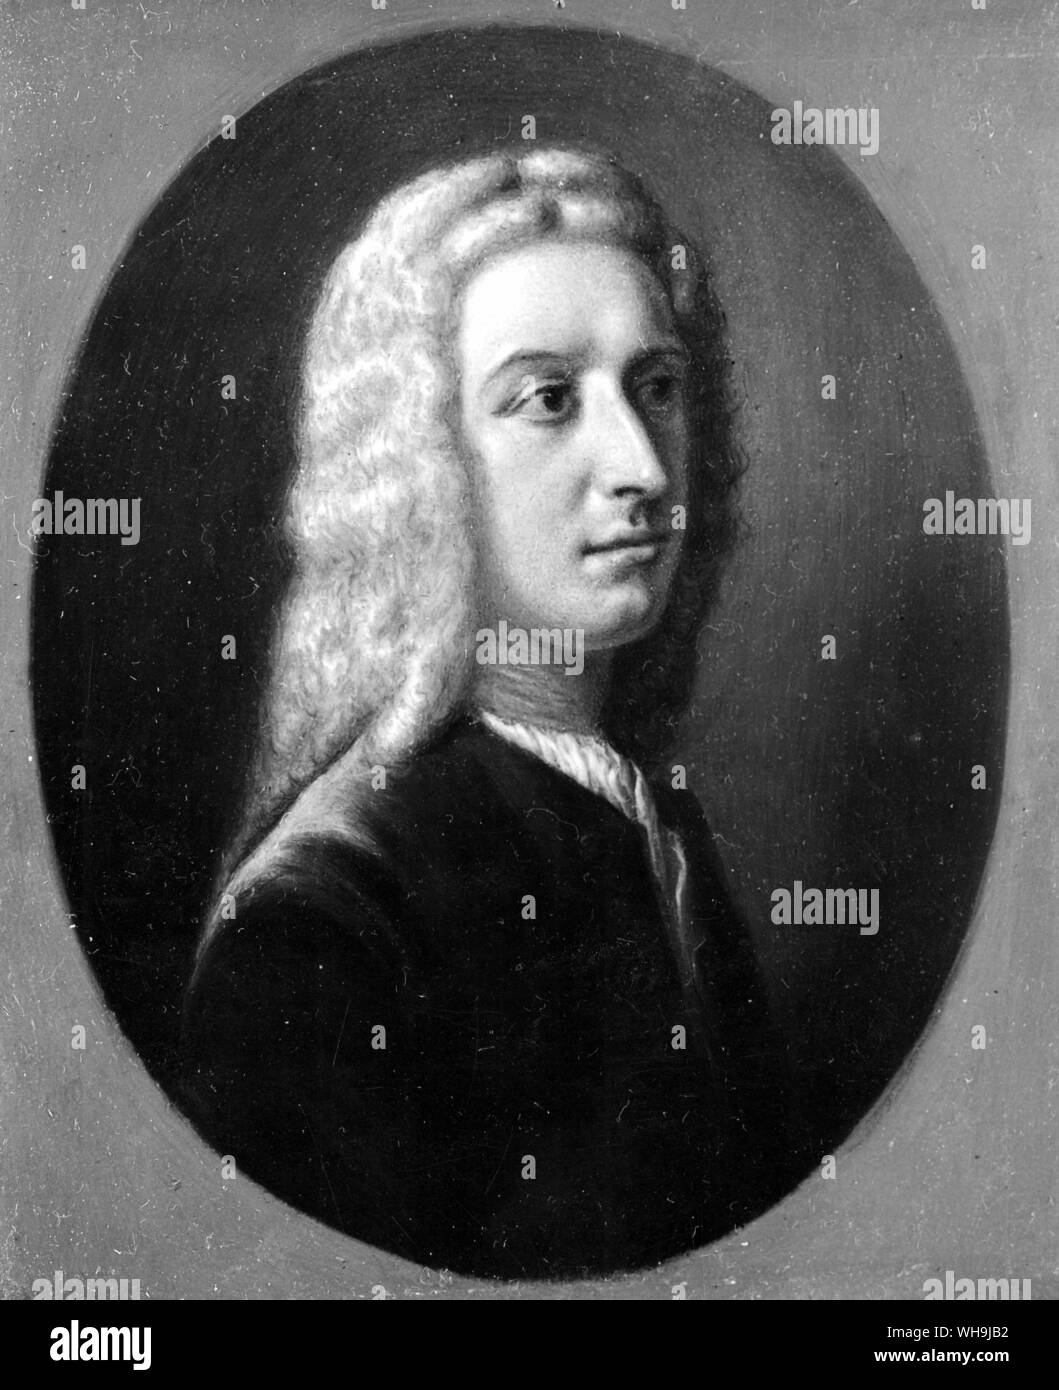 James Edward Oglethorpe (1696-1785), English soldier and colonizer of Georgia. Stock Photo